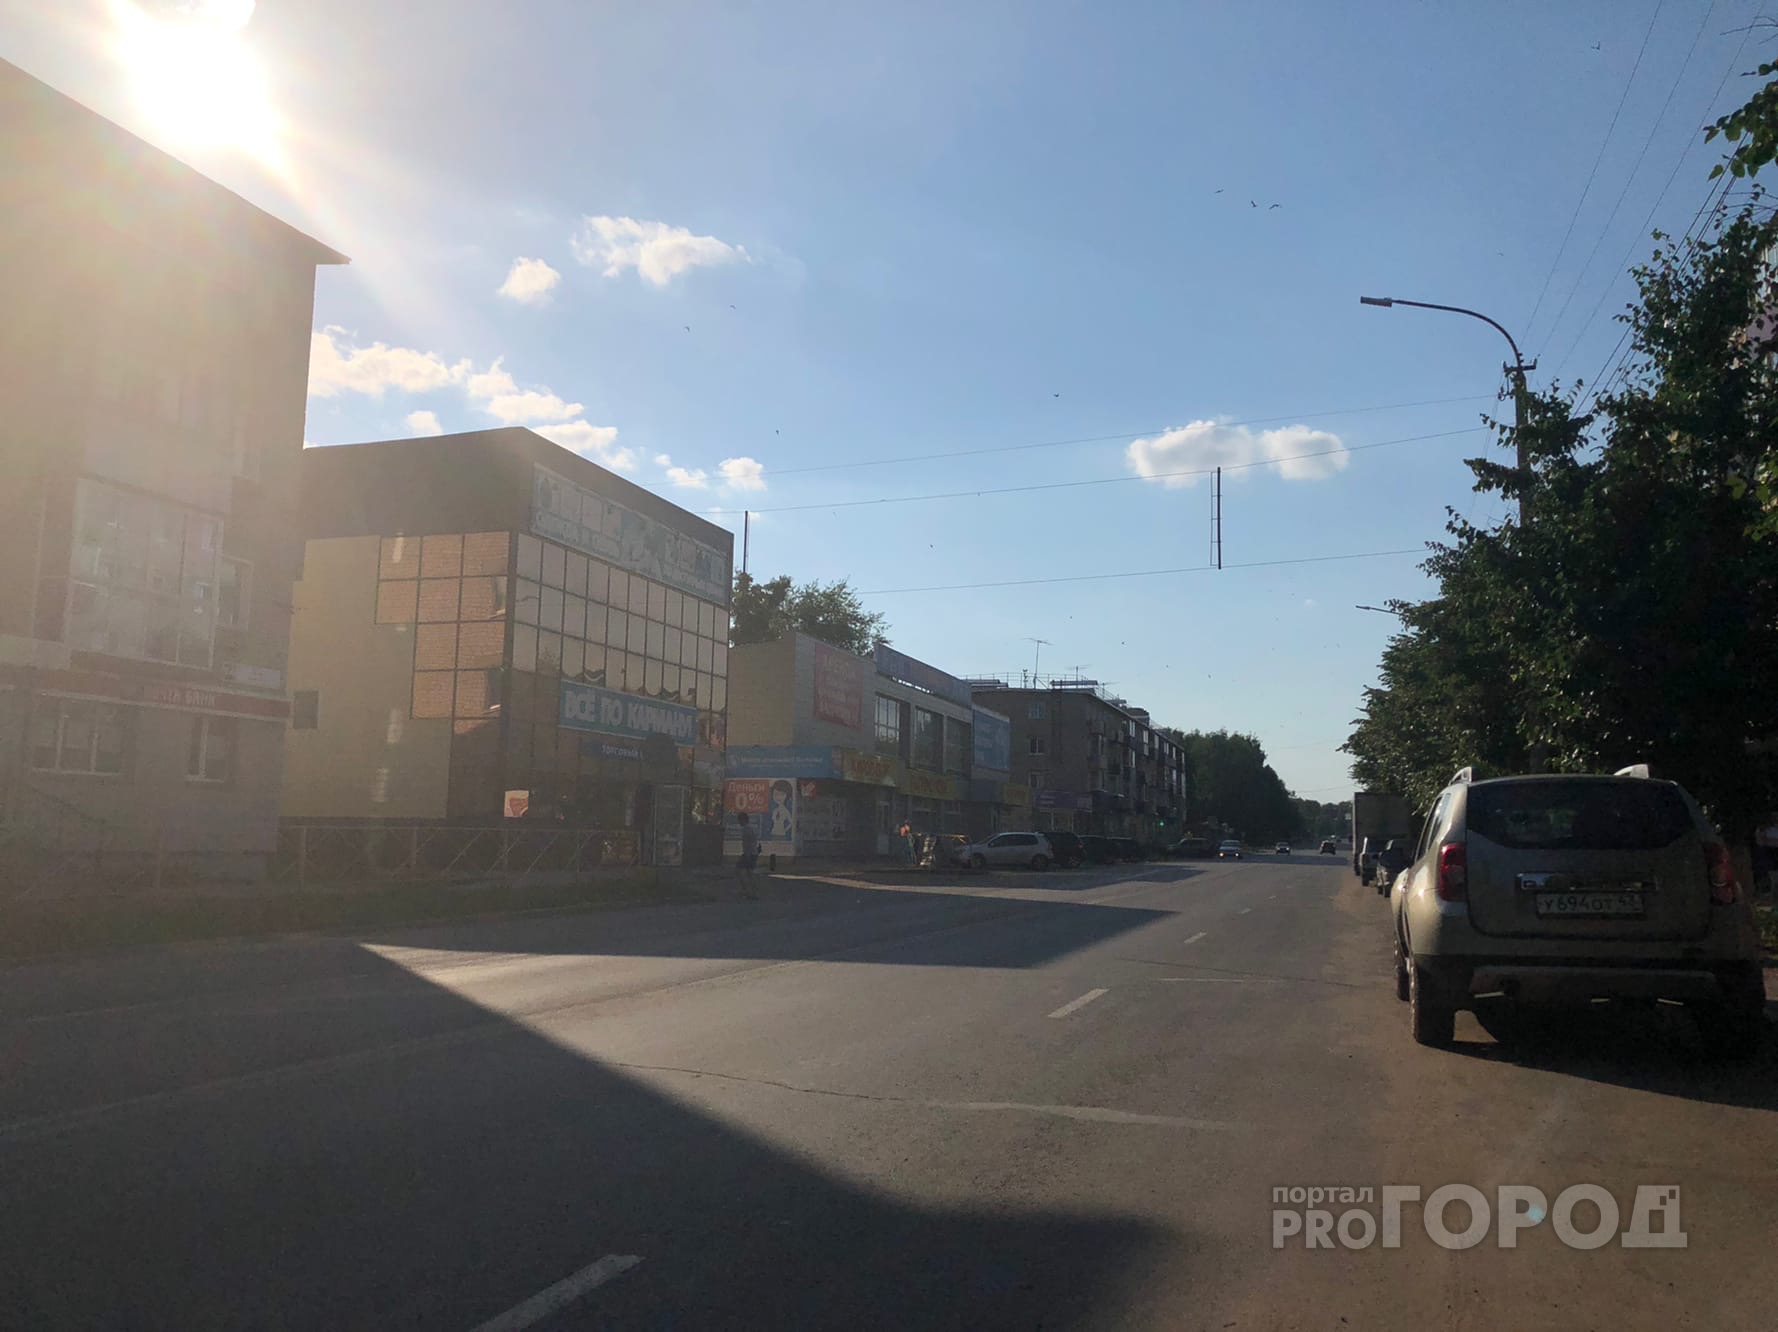 Синоптик рассказал, когда в Кирово-Чепецк вернется теплая погода